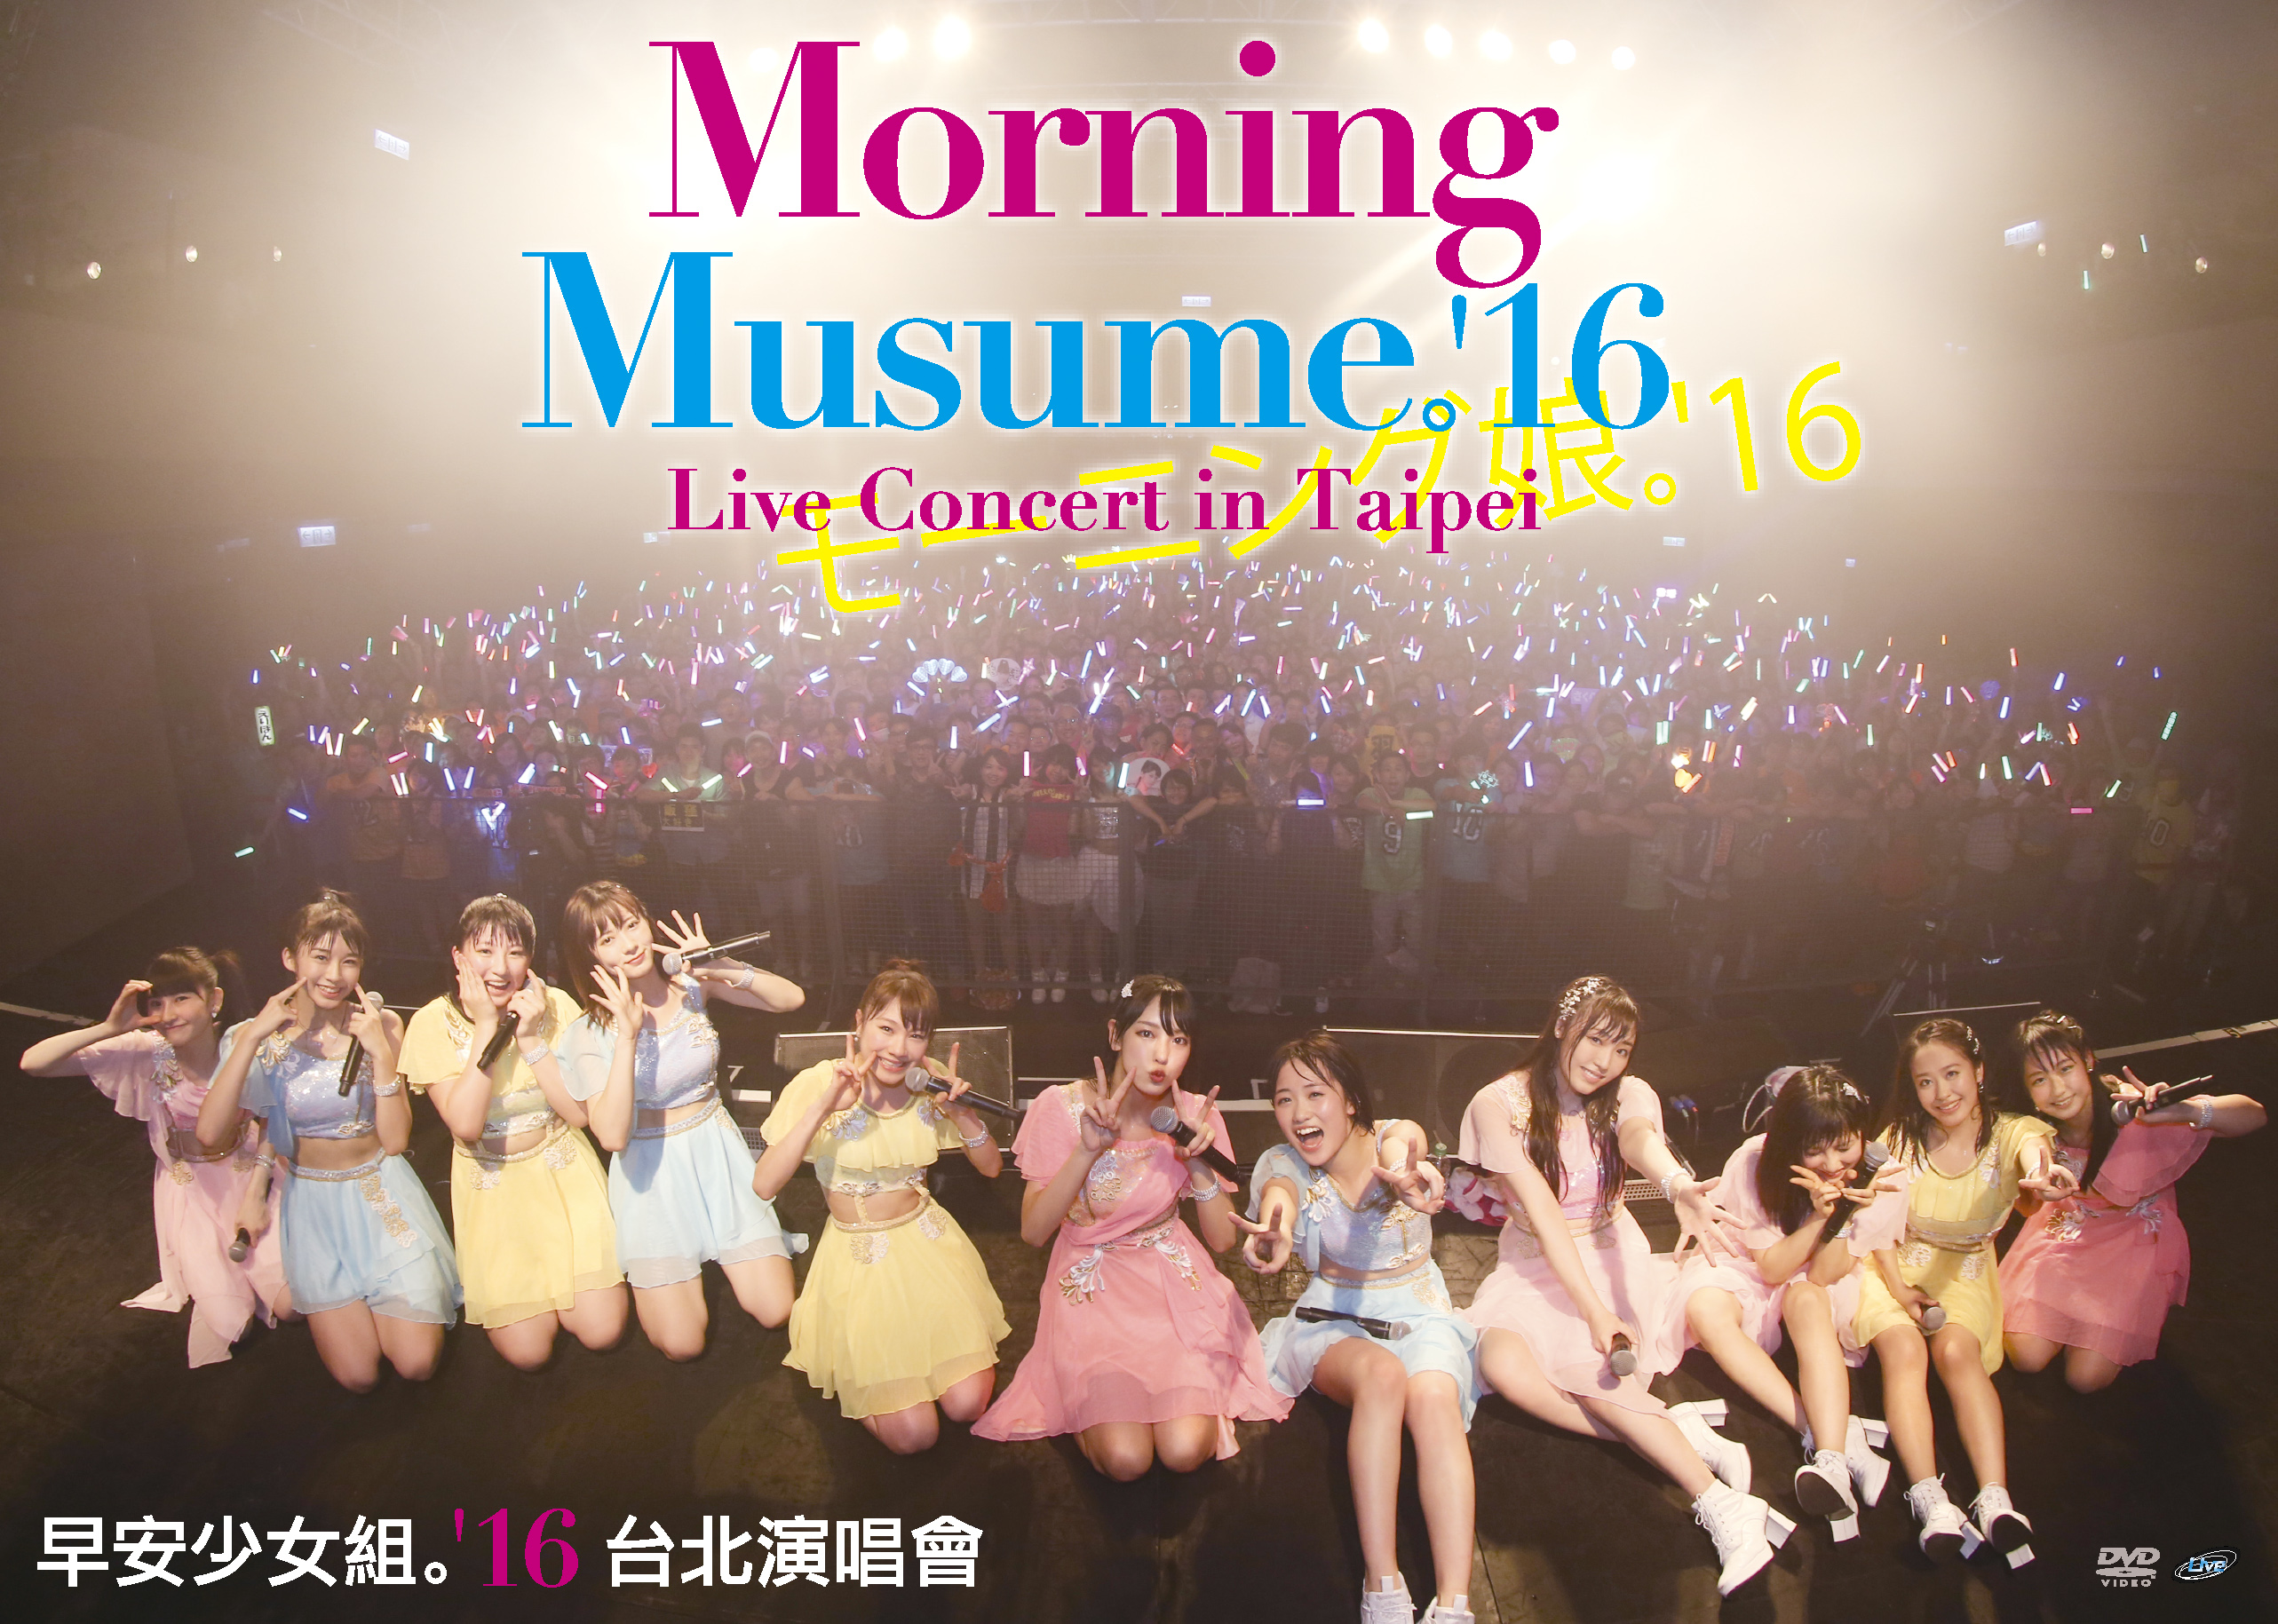 モーニング娘。'16 LIVE DVD「Morning Musume。'16 Live Concert in 